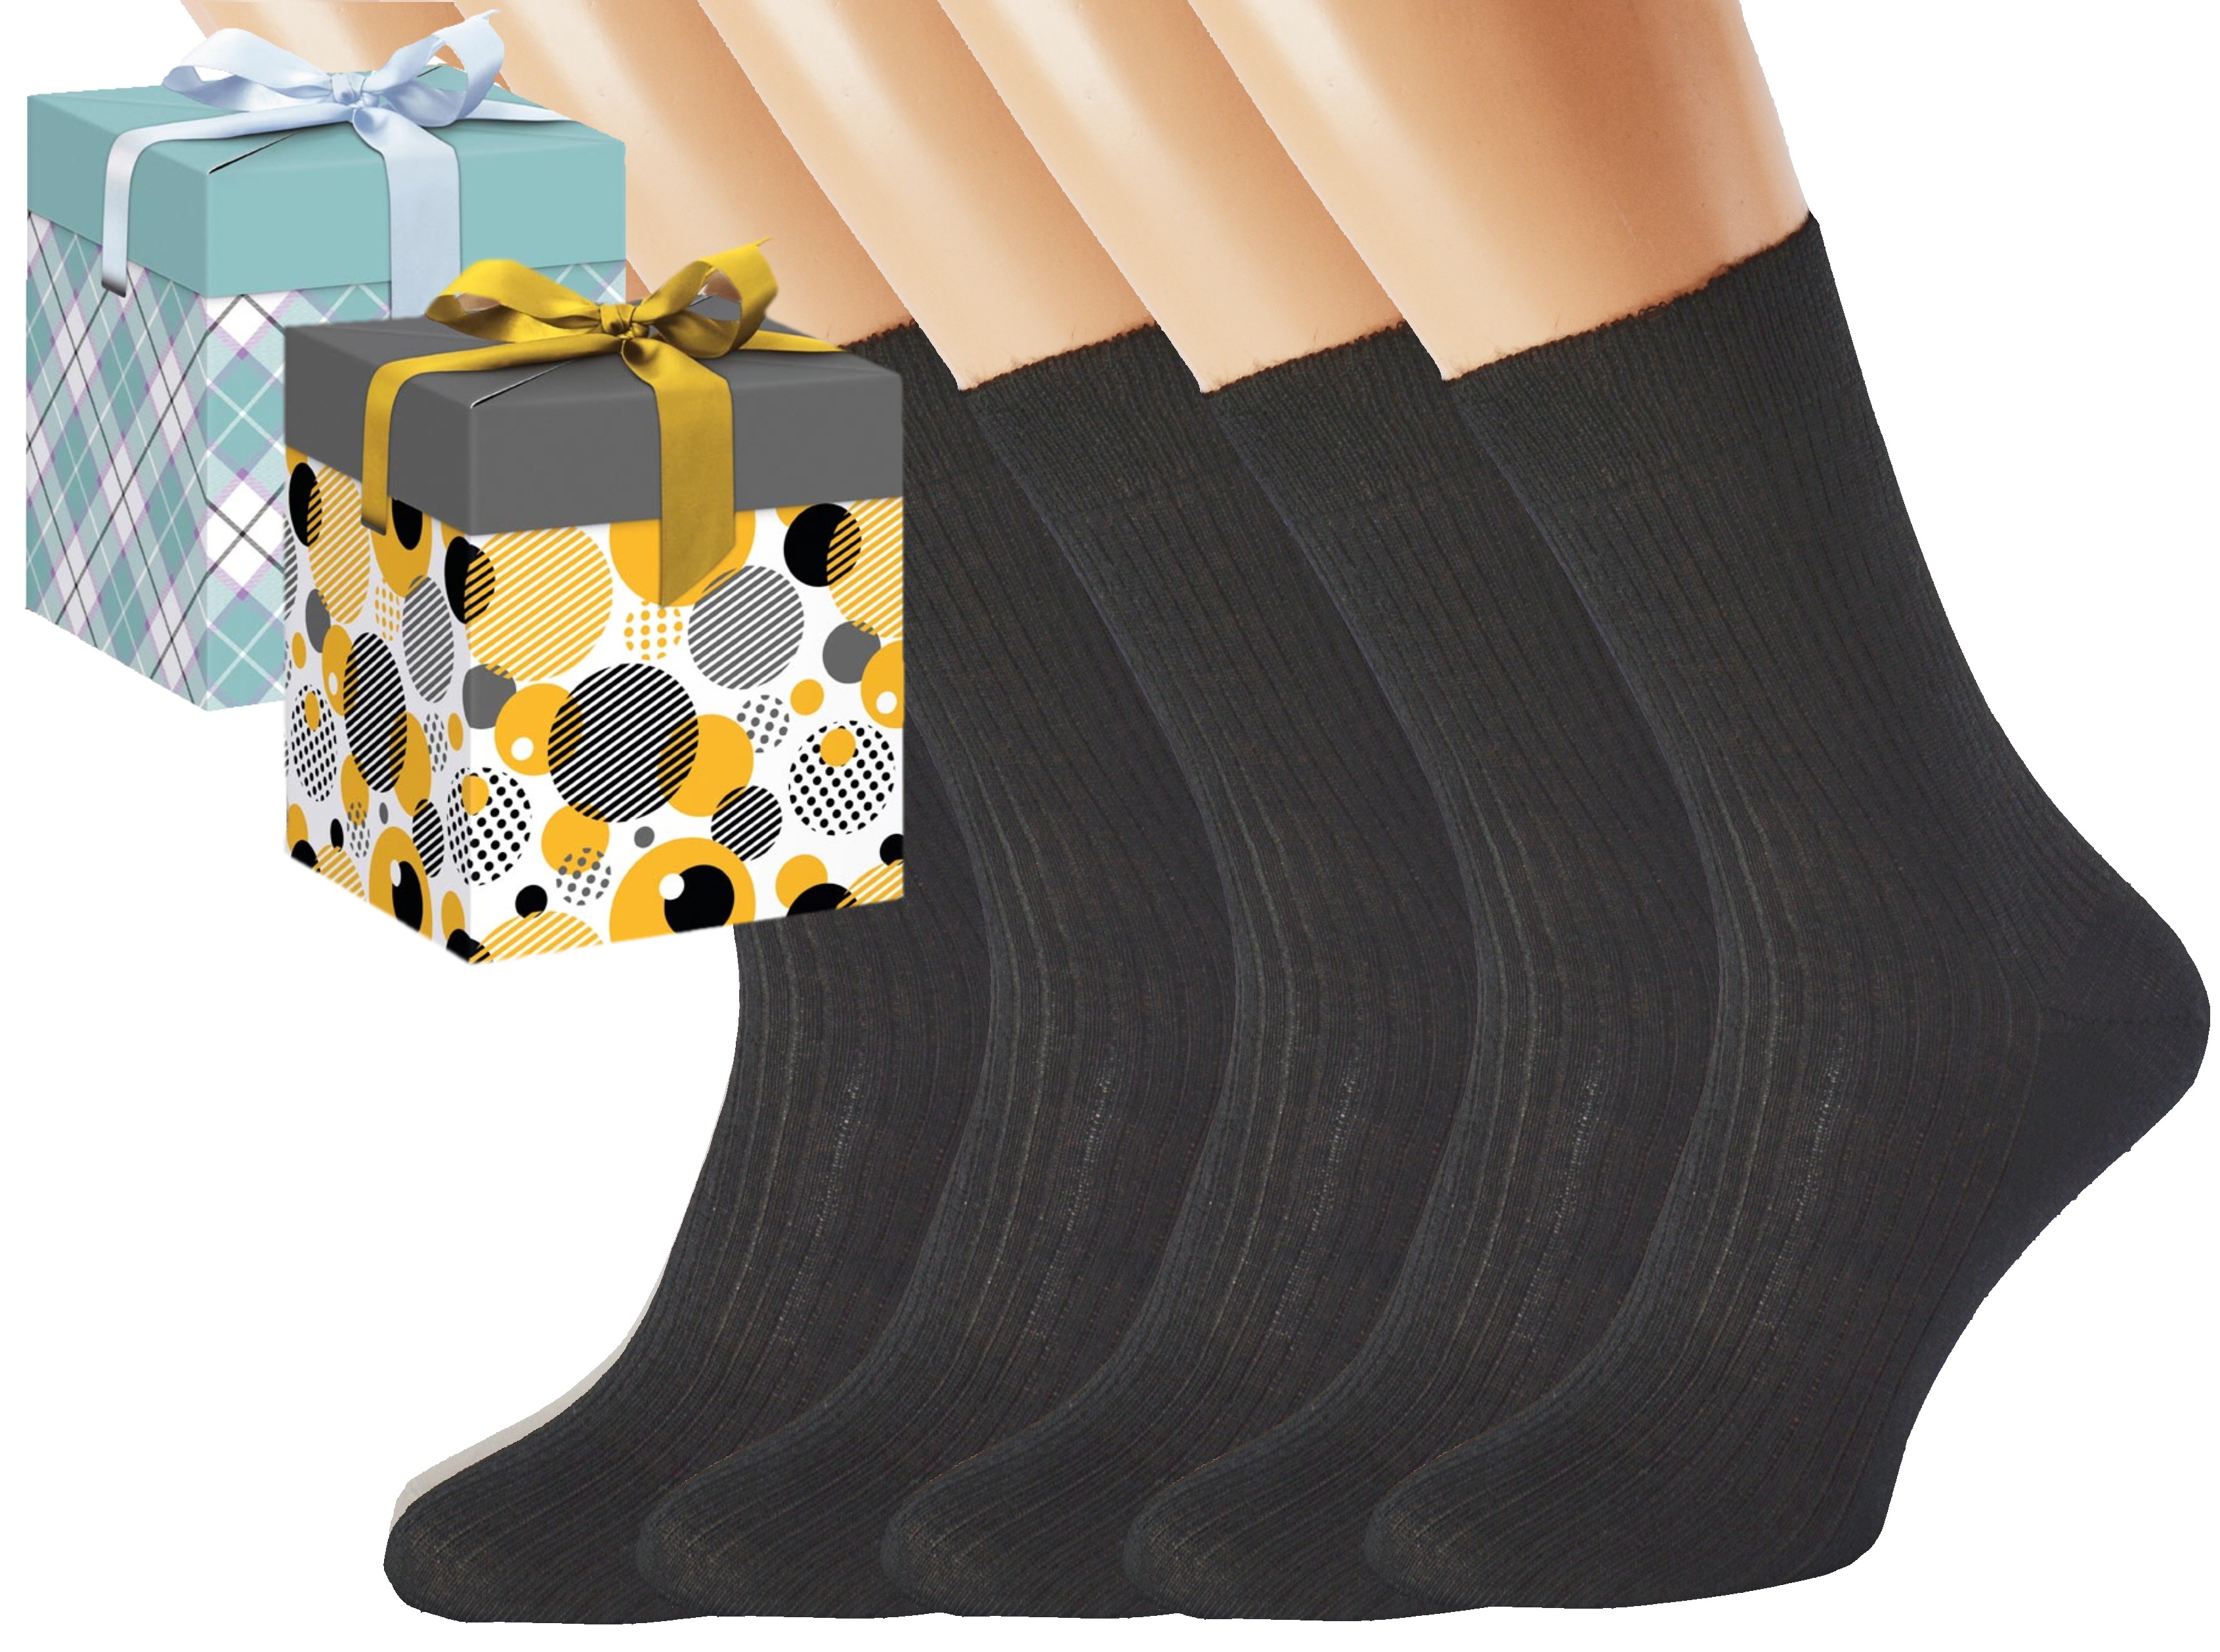 Dárkové balení merino zdravotních ponožek LUKÁŠ KUKS Barva: Černé, Velikost: EUR 36-38 (UK 4-5), Zvolte variantu dárkového balení: Mint kostkovaná